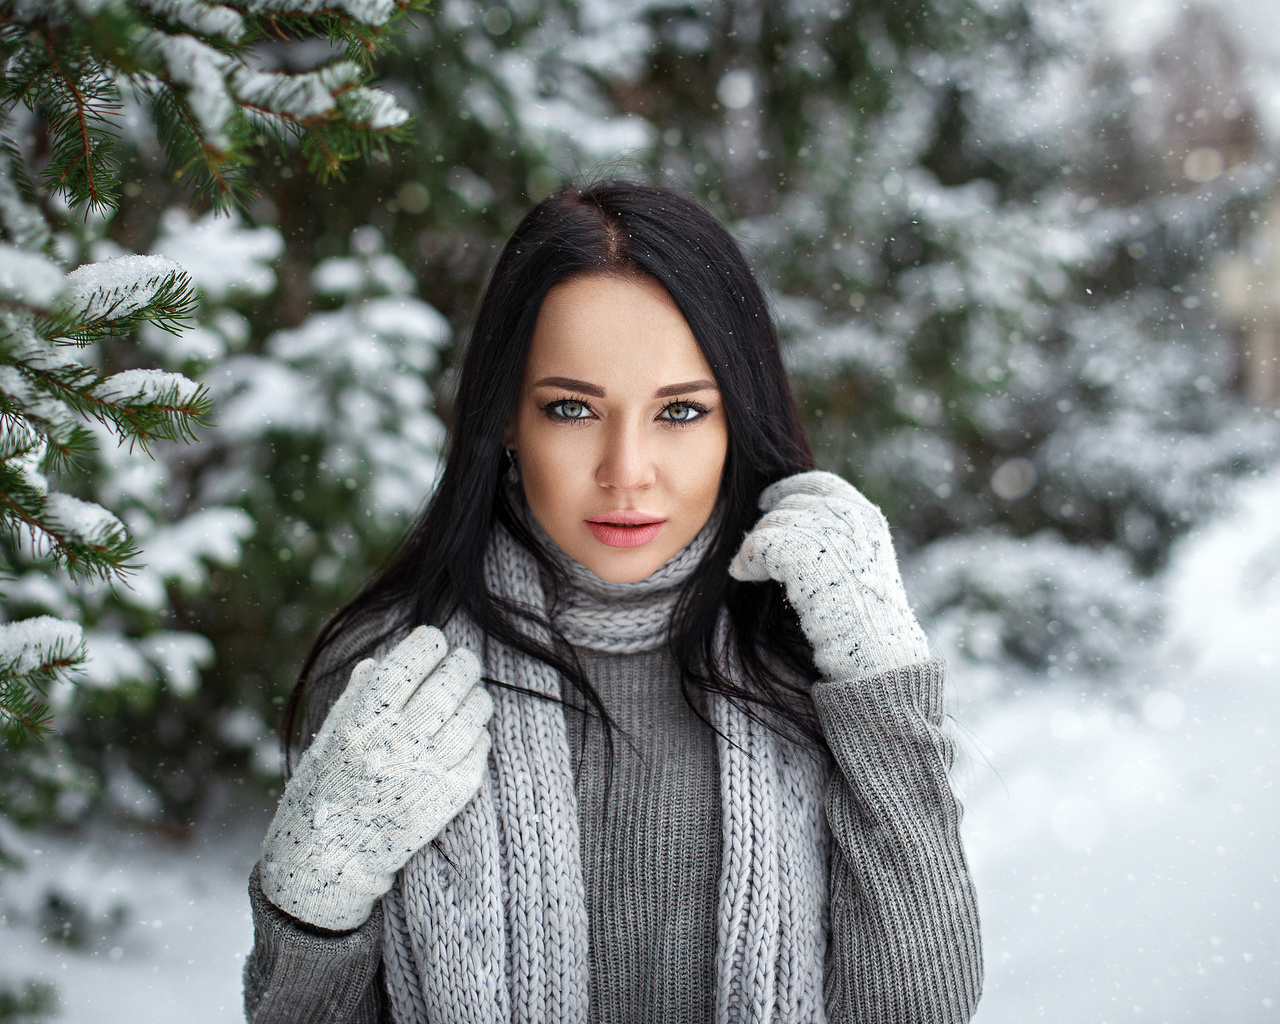 angelina petrova, women, model, gloves, snow, depth of field, black hair, sweater, women outdoors, portrait